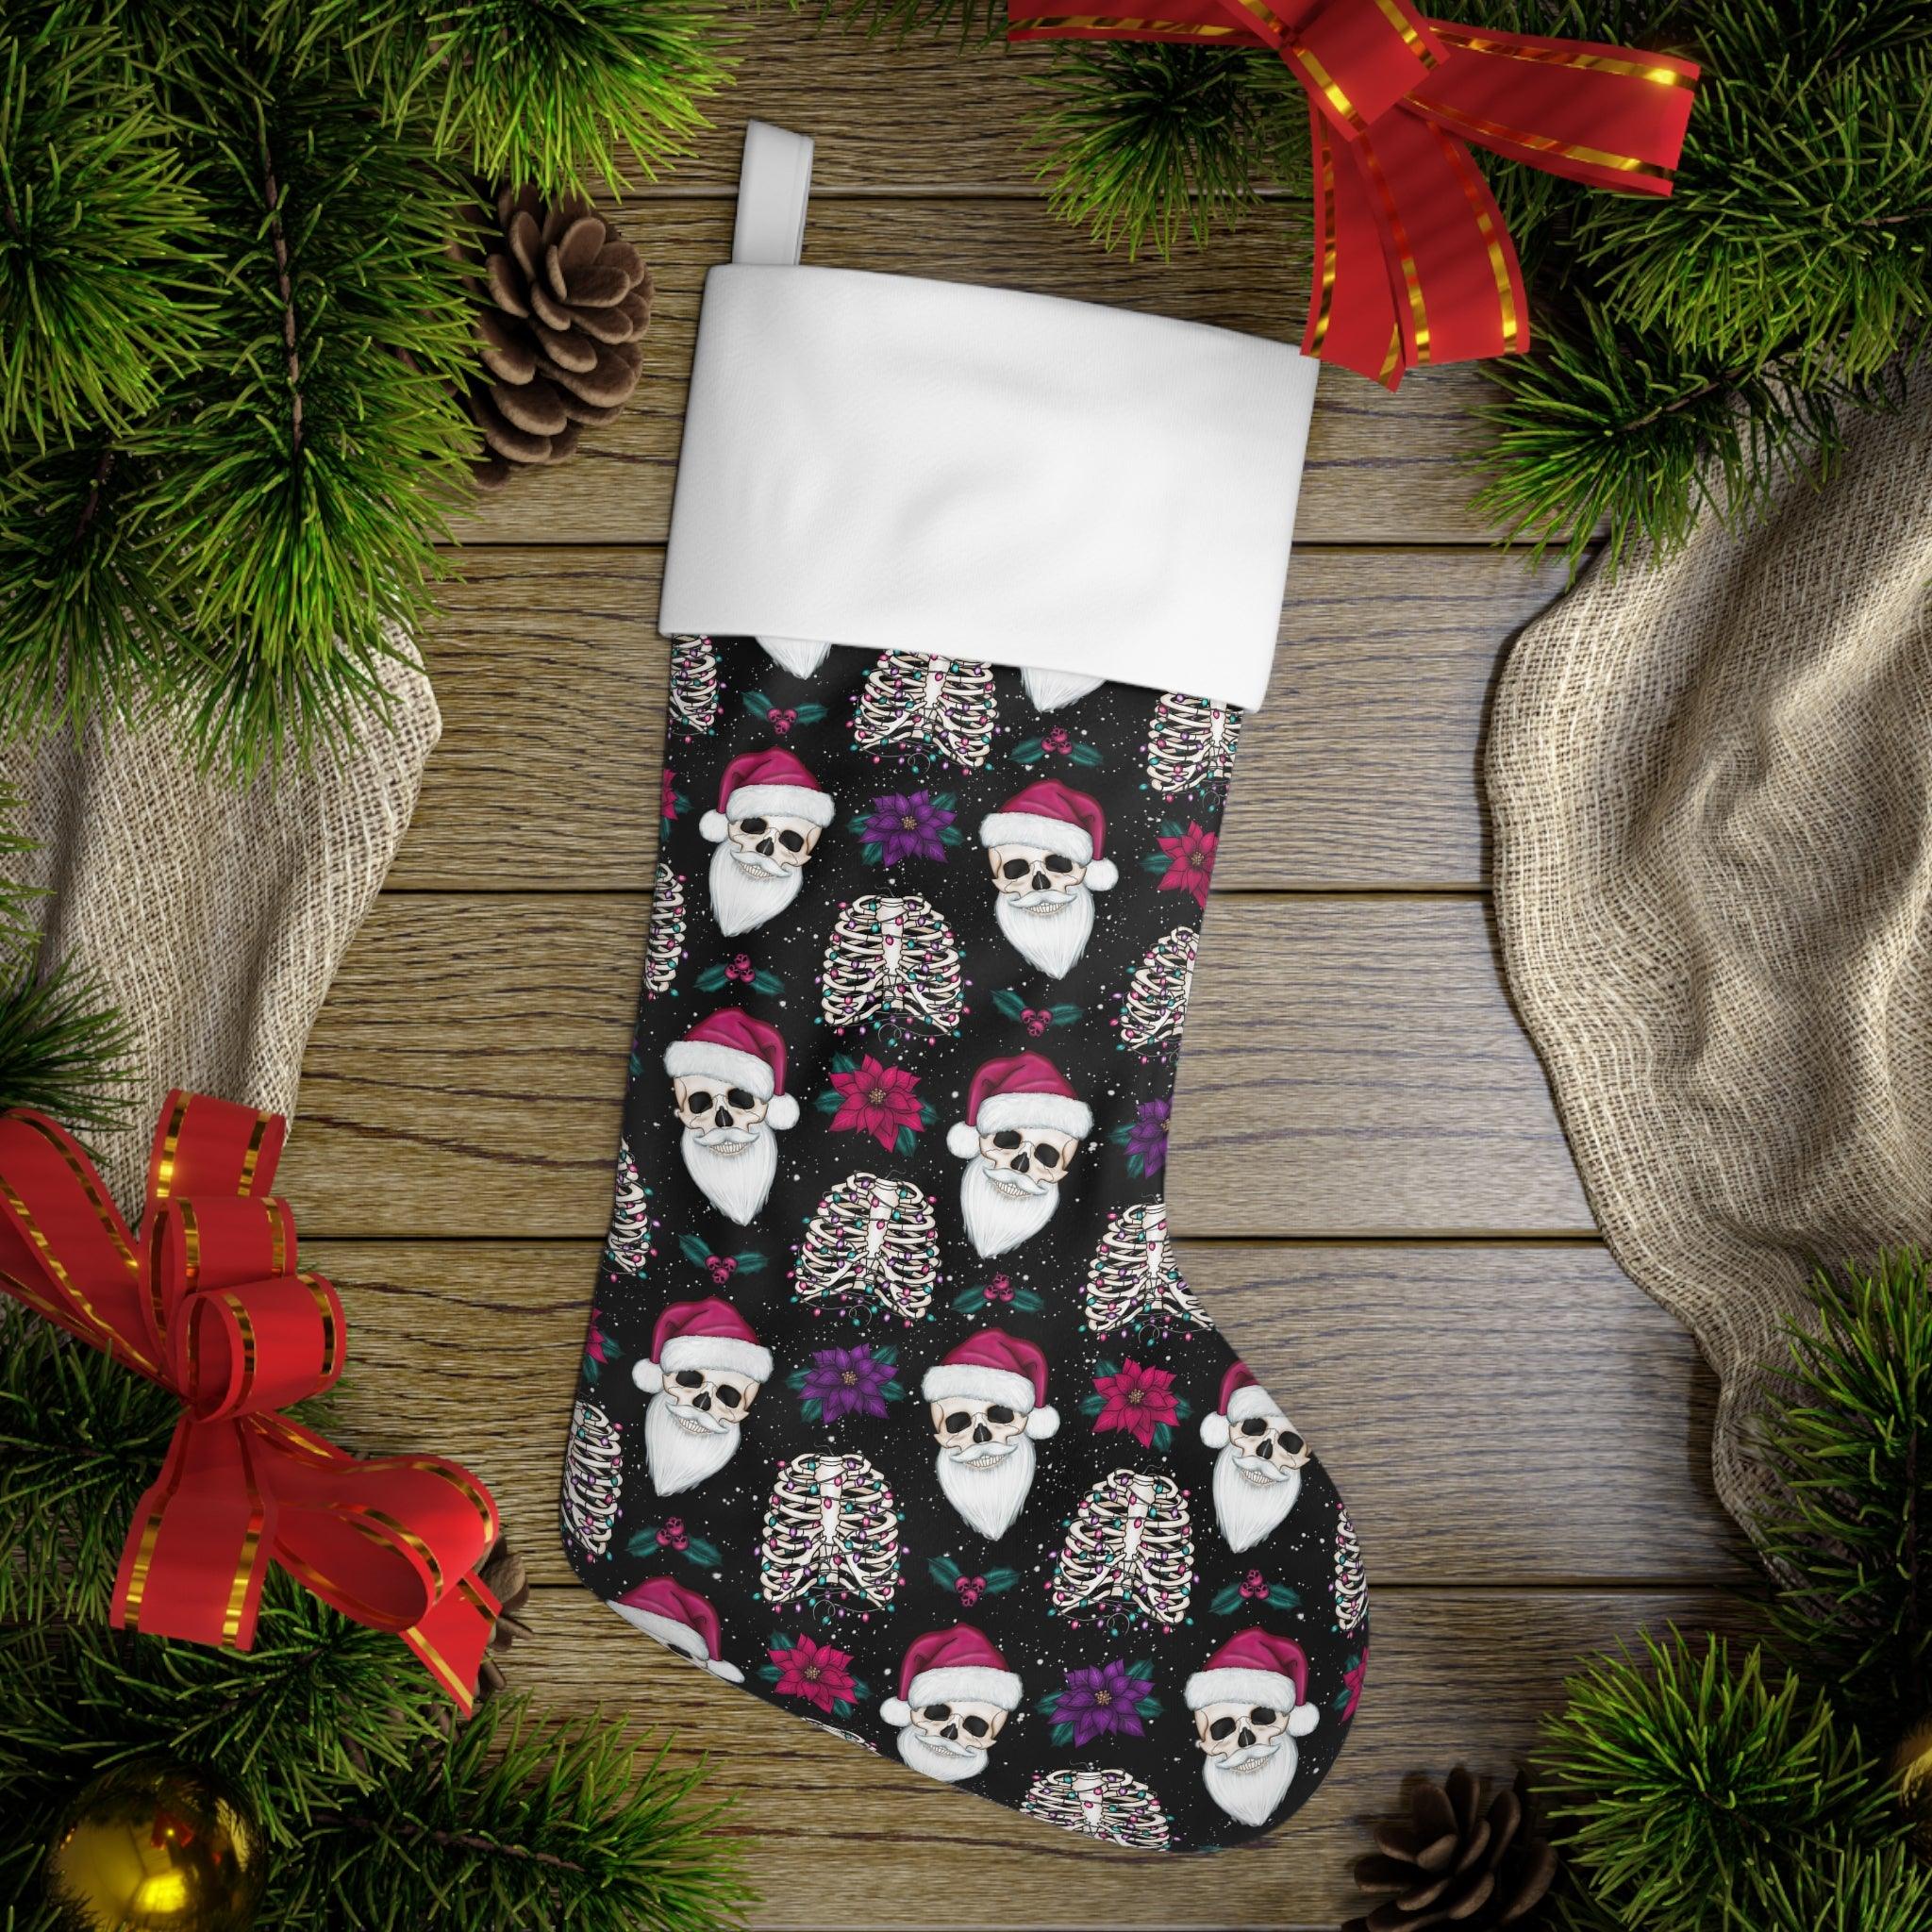 Skull Santa Goth Christmas Stocking, Creepy Scary Black Creepmas Holiday Decor